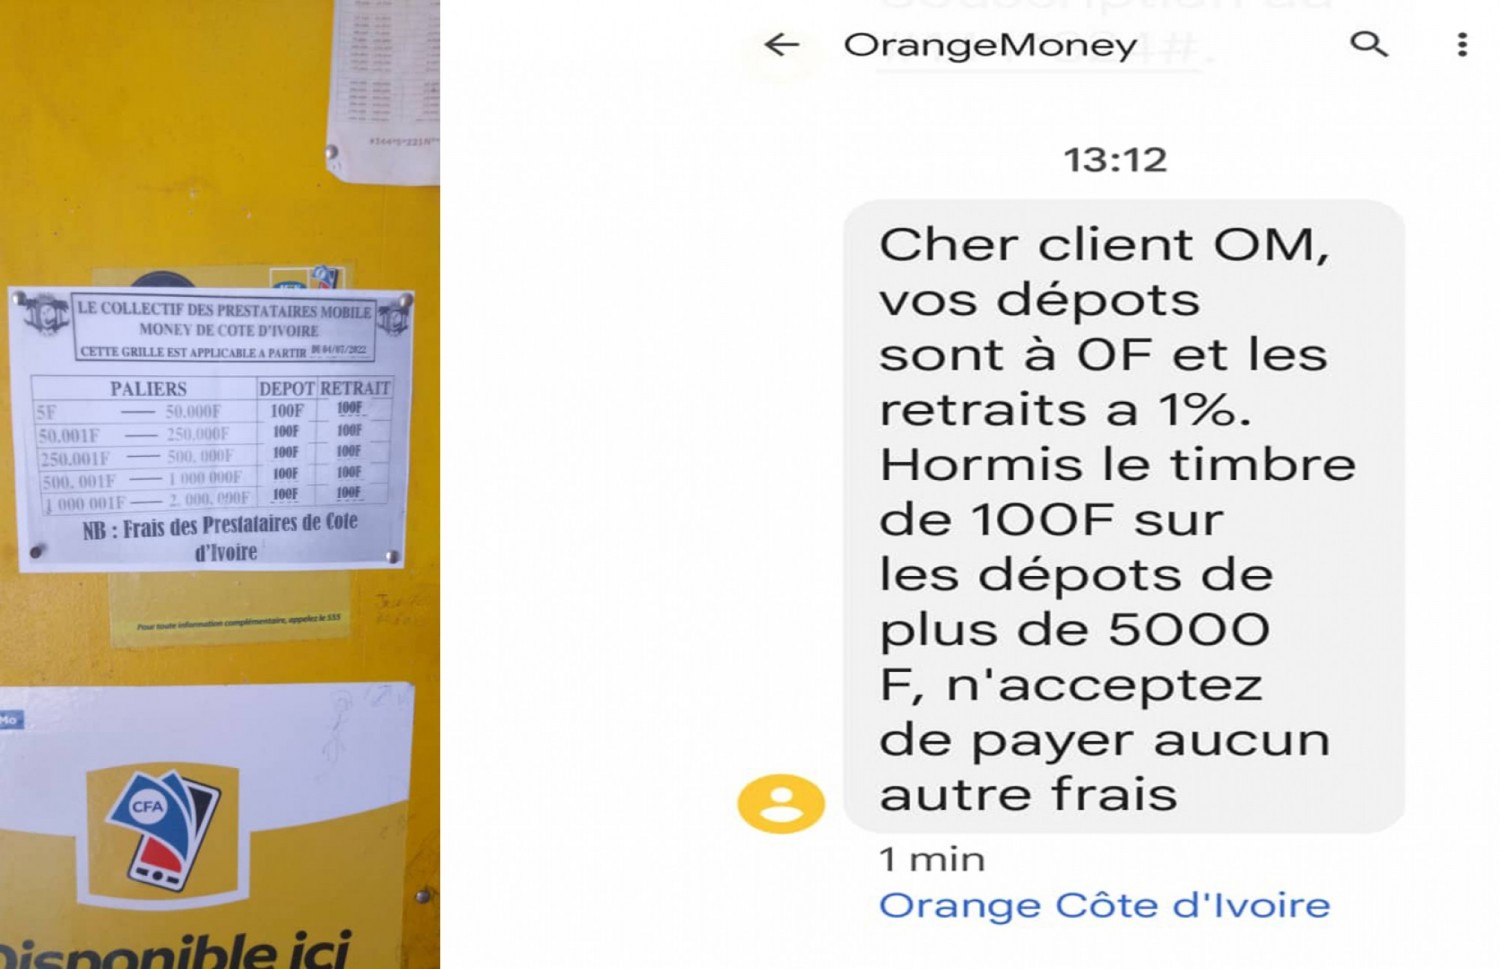 Côte d'Ivoire : Transferts d'argent, paiement de 100 FCFA de frais sur les retraits et dépôts, les clients « Marmaillés » ?